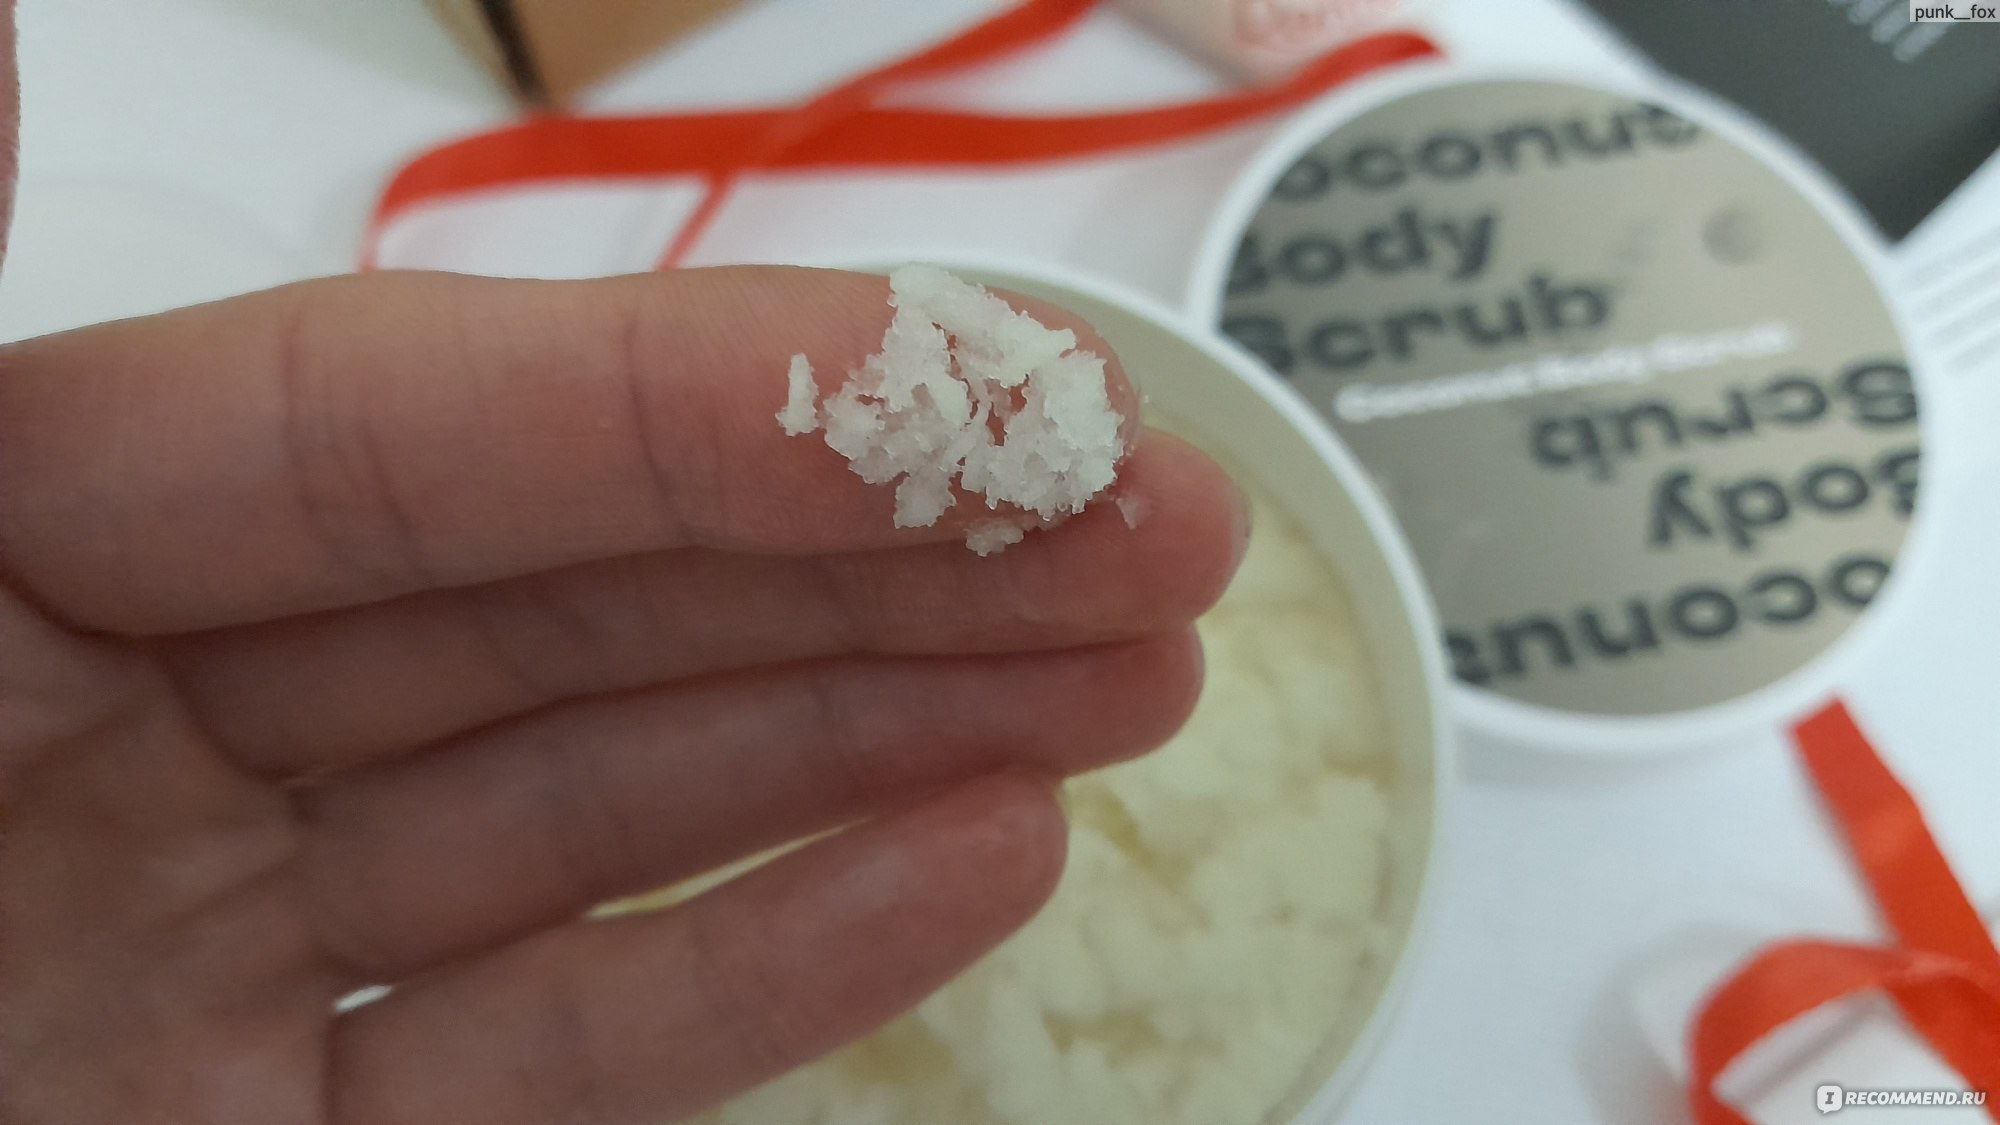 Солевой скраб для тела Insum кокосовый фото